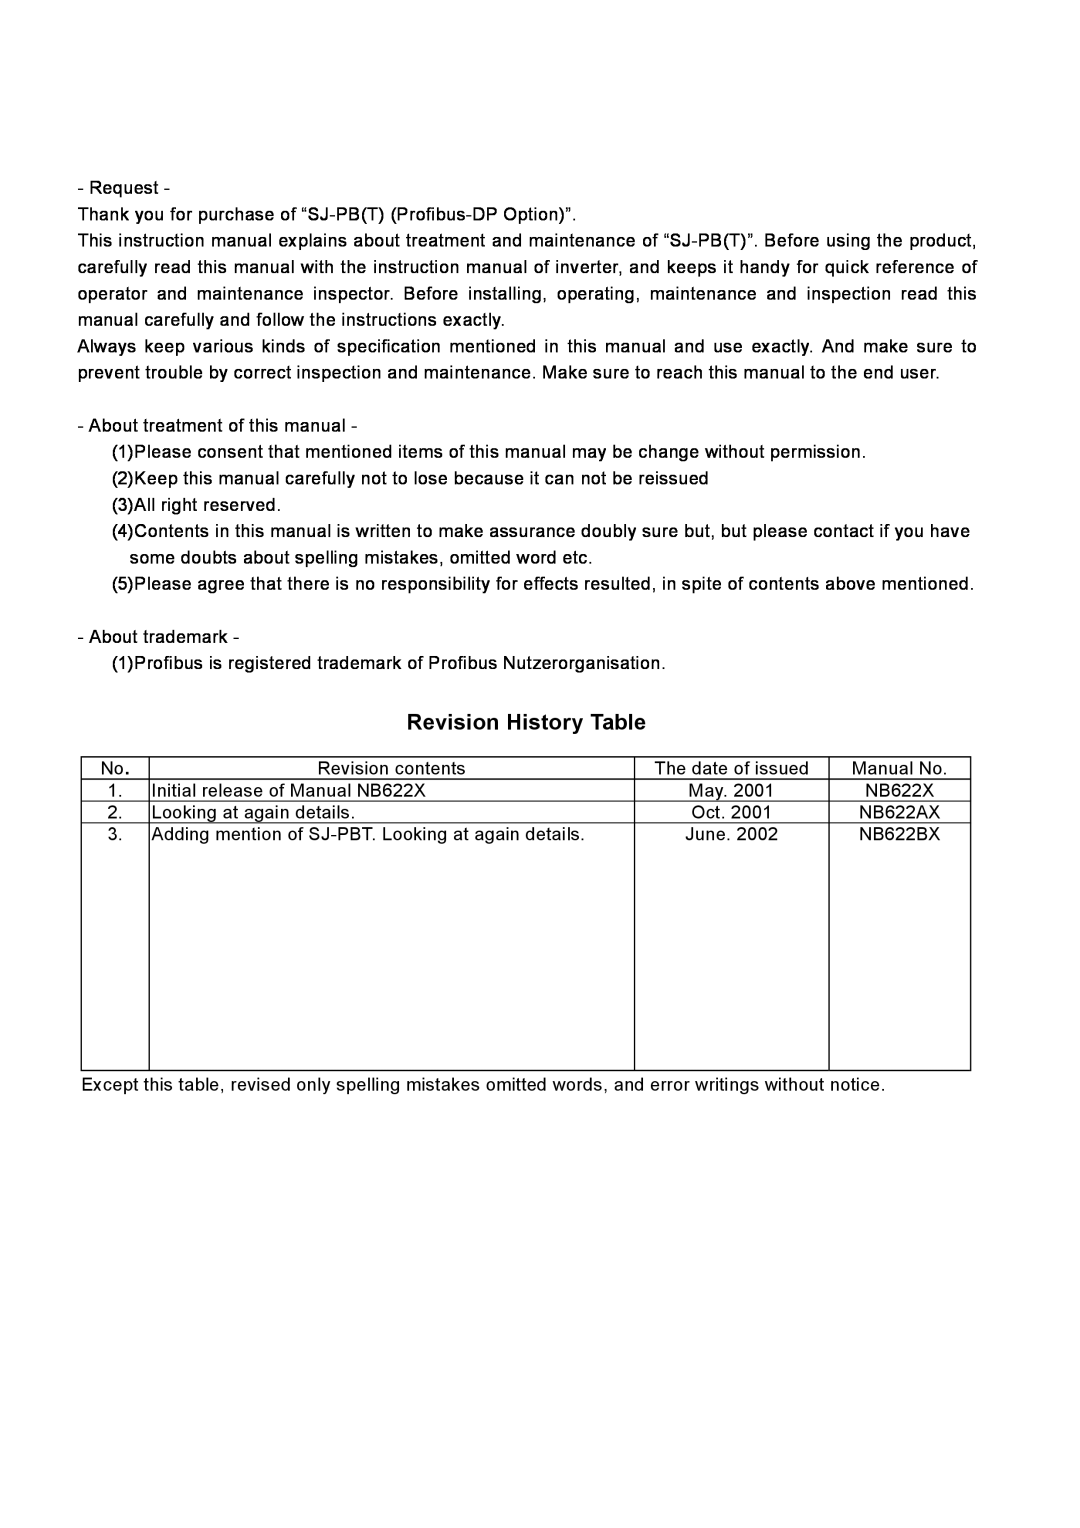 Hitachi SJ-PB(T) instruction manual Revision History Table 